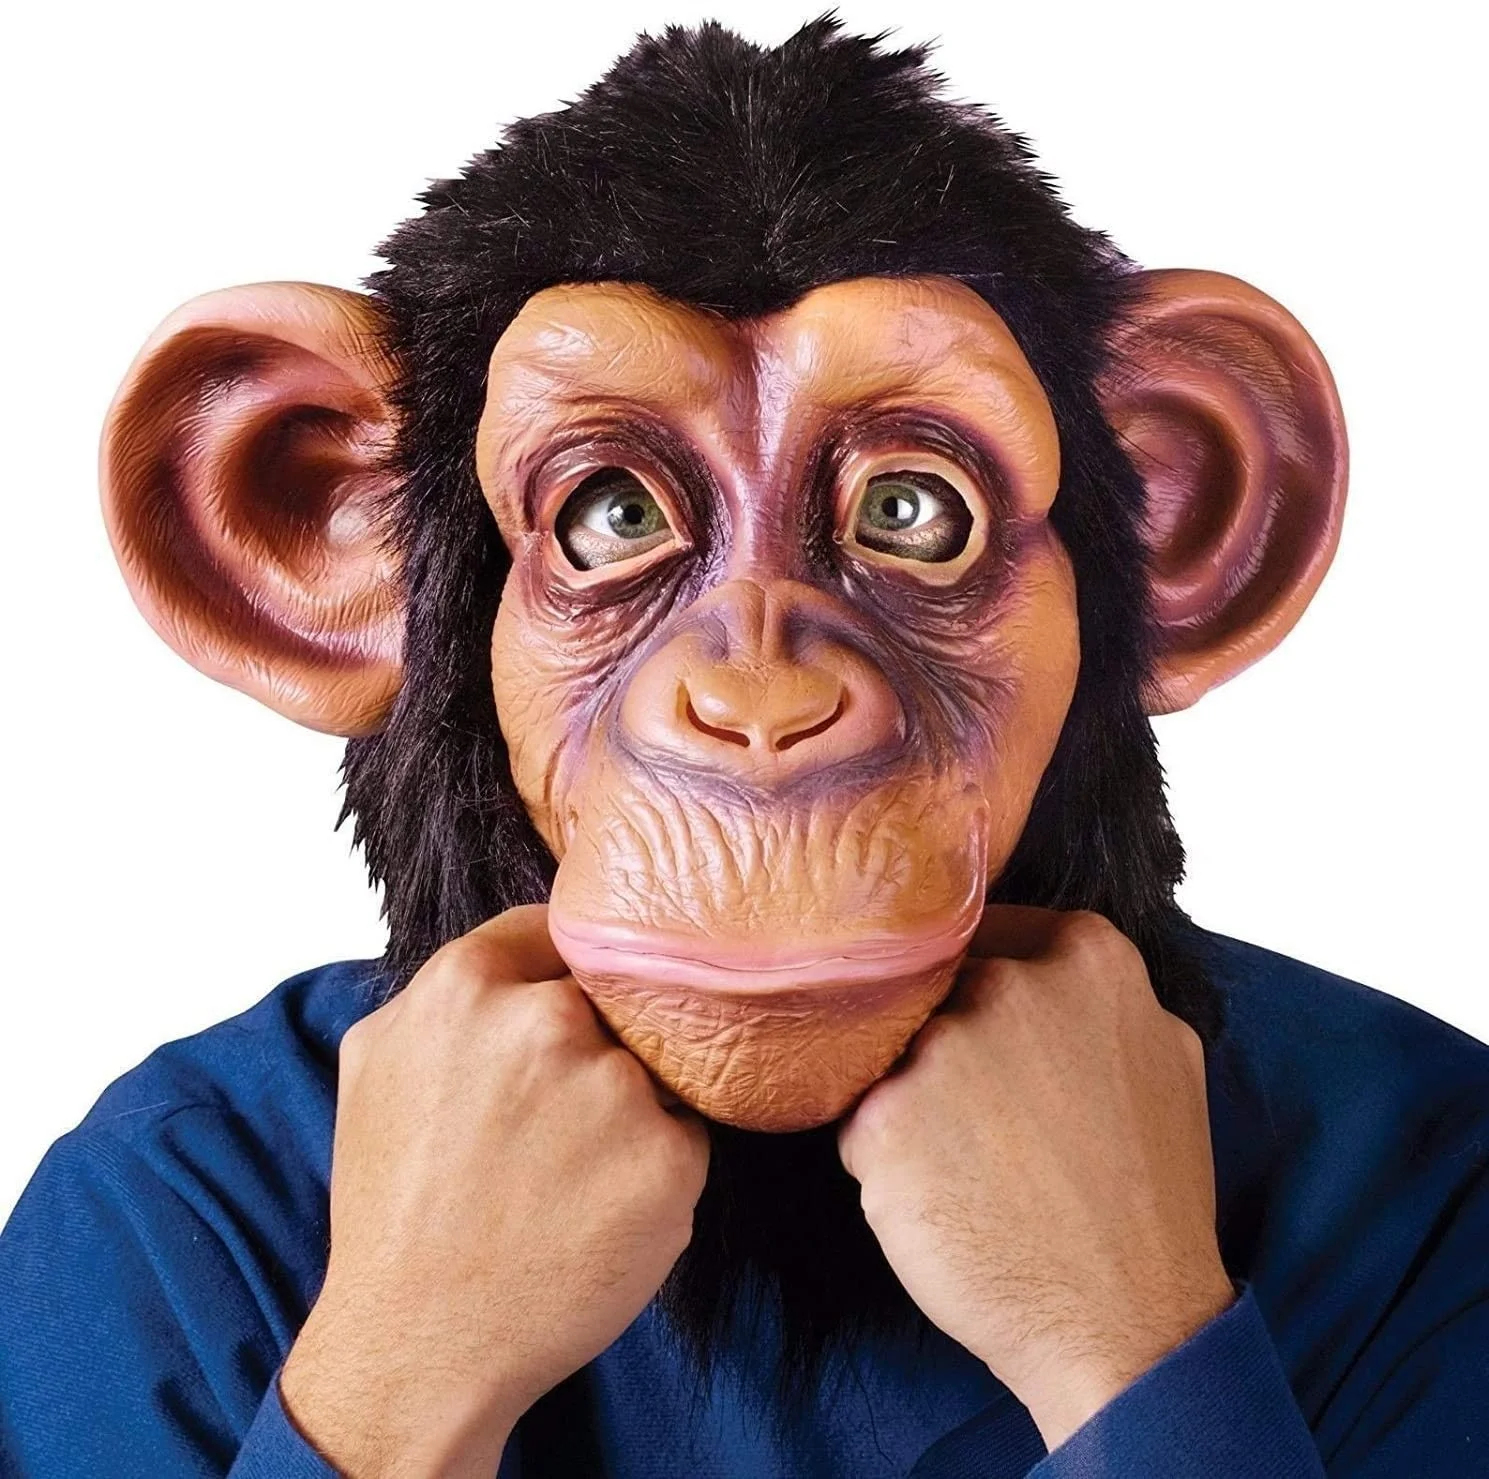 ヒヒ 猿 ゴリラ チンパンジーマスクホット販売王の新デザインアニマルファンシードレスマスクハロウィンマスク Buy Papion マスク ゴリラ マスク チンパンジーマスク Product On Alibaba Com